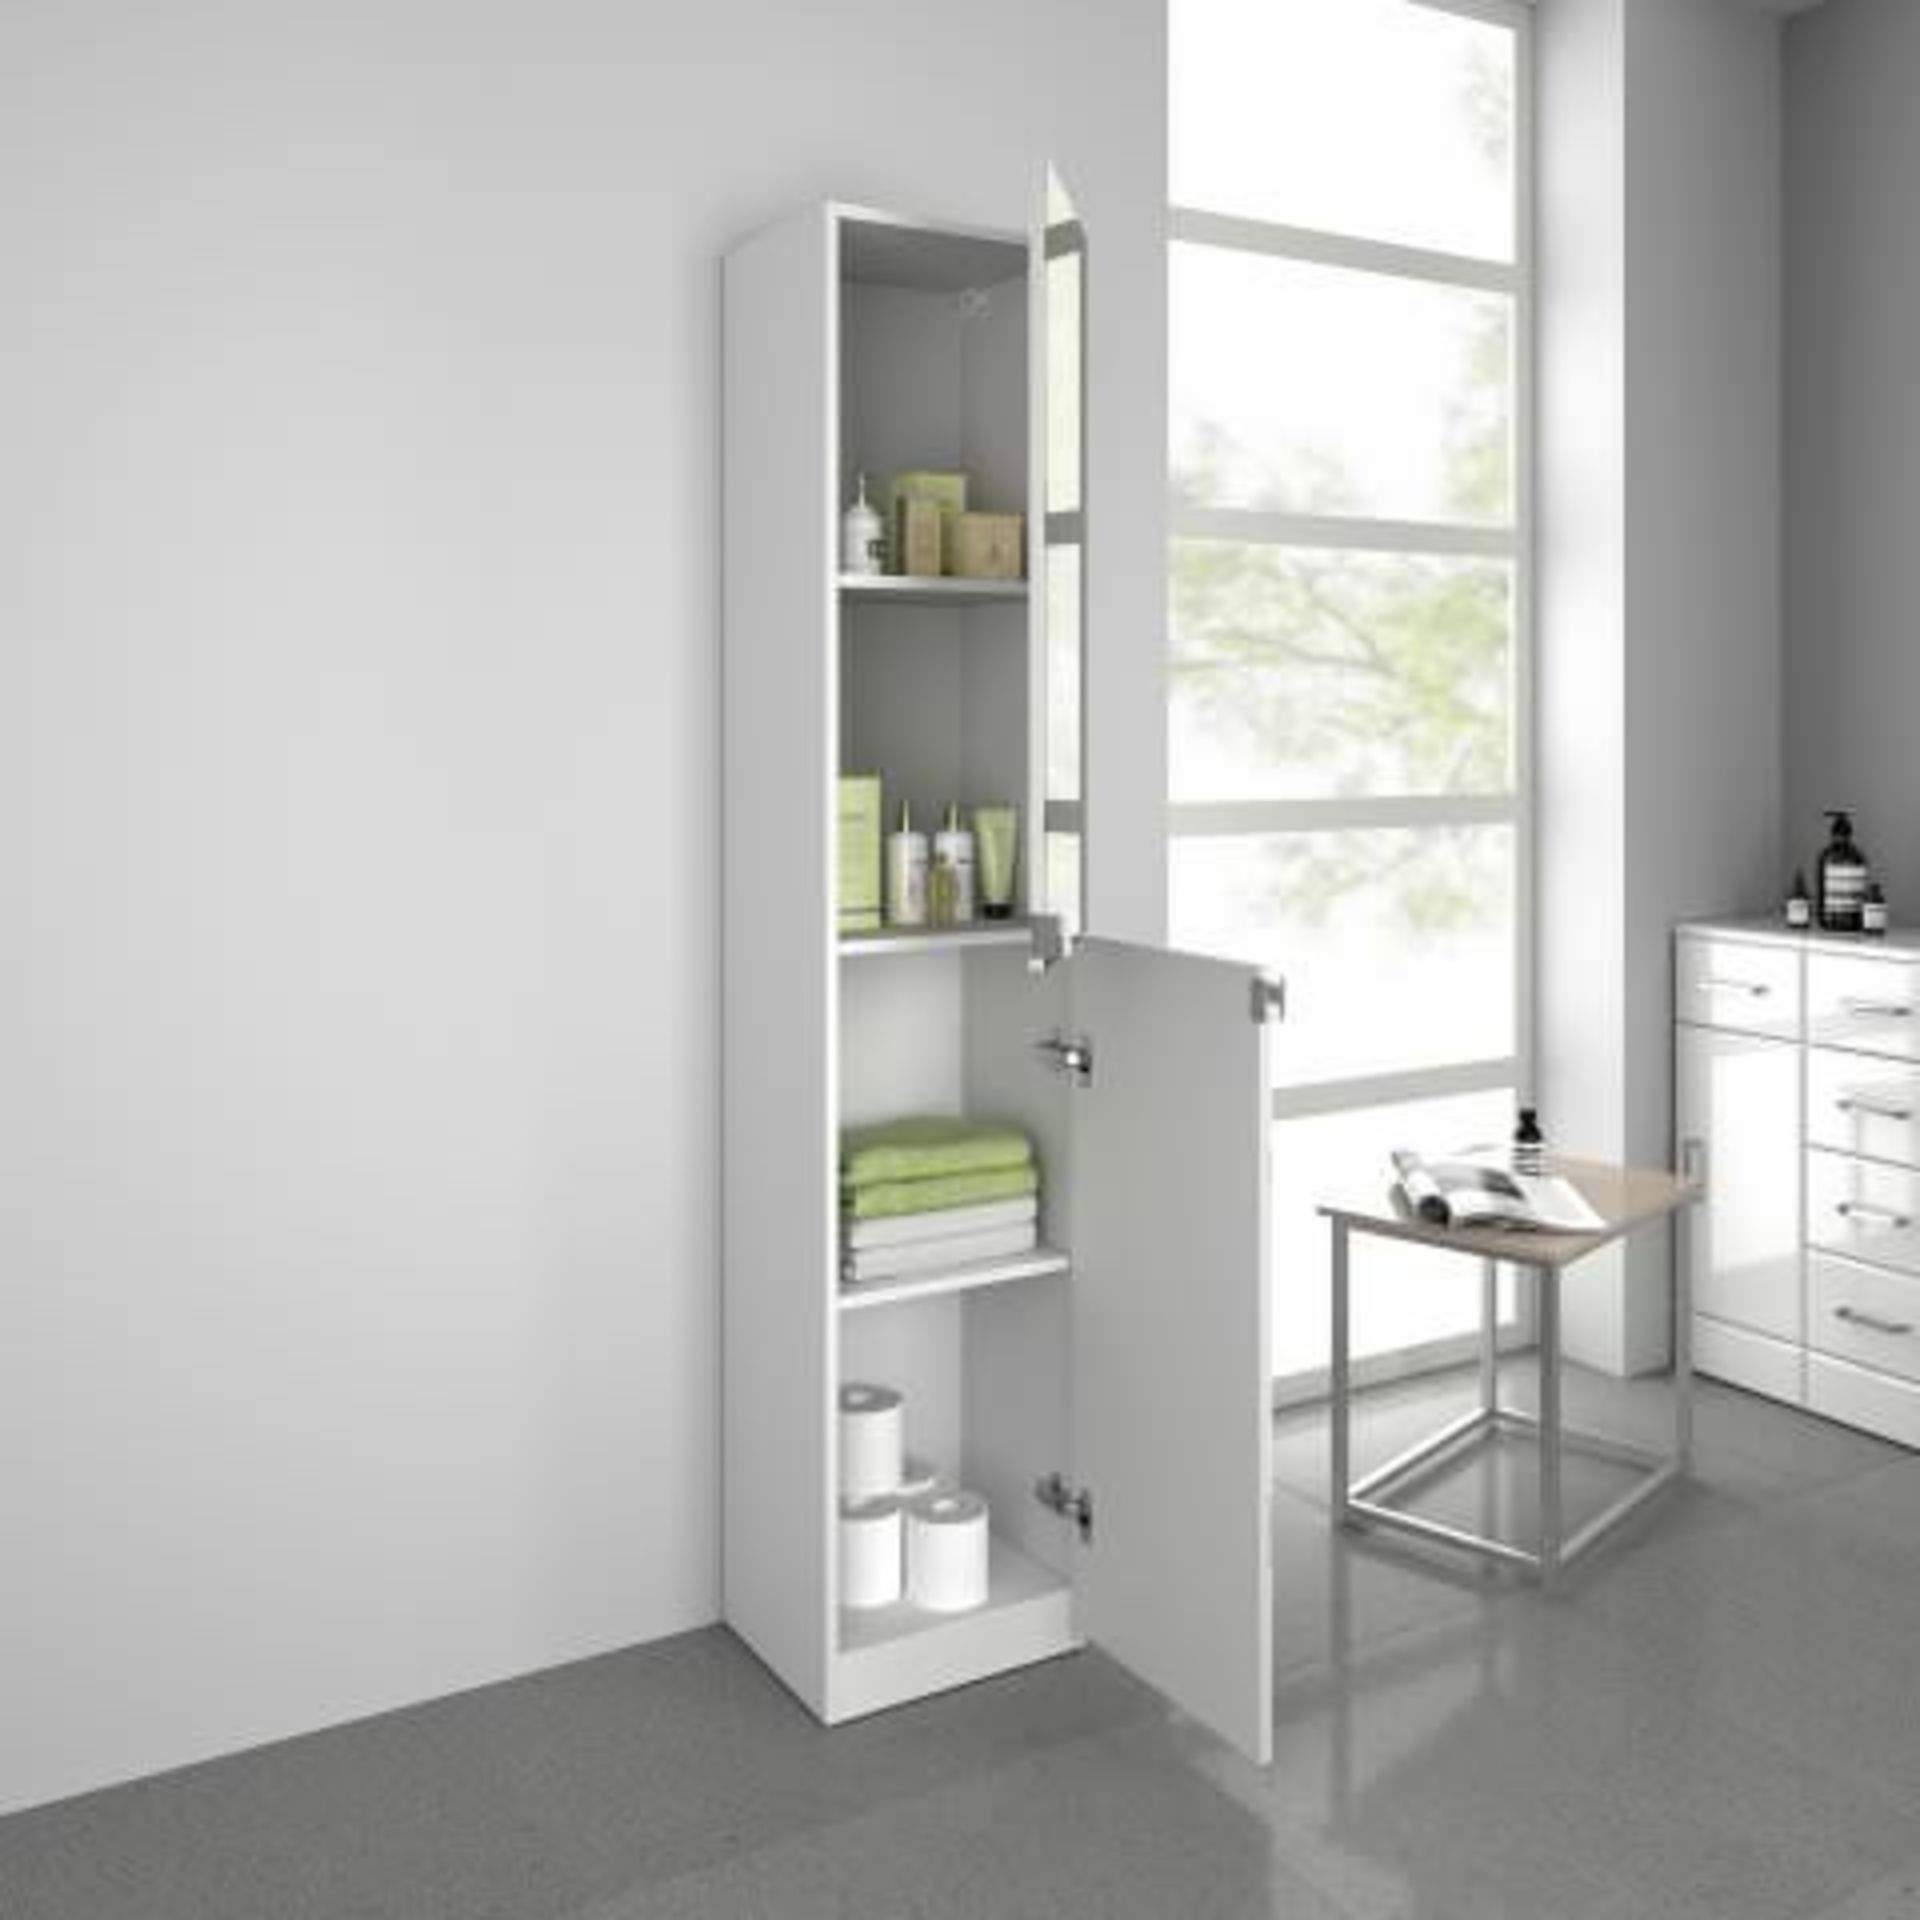 (J51) 1700x350mm Mirrored Door Matte White Tall Storage Cabinet - Floor Standing. RRP £339.99. - Bild 3 aus 3